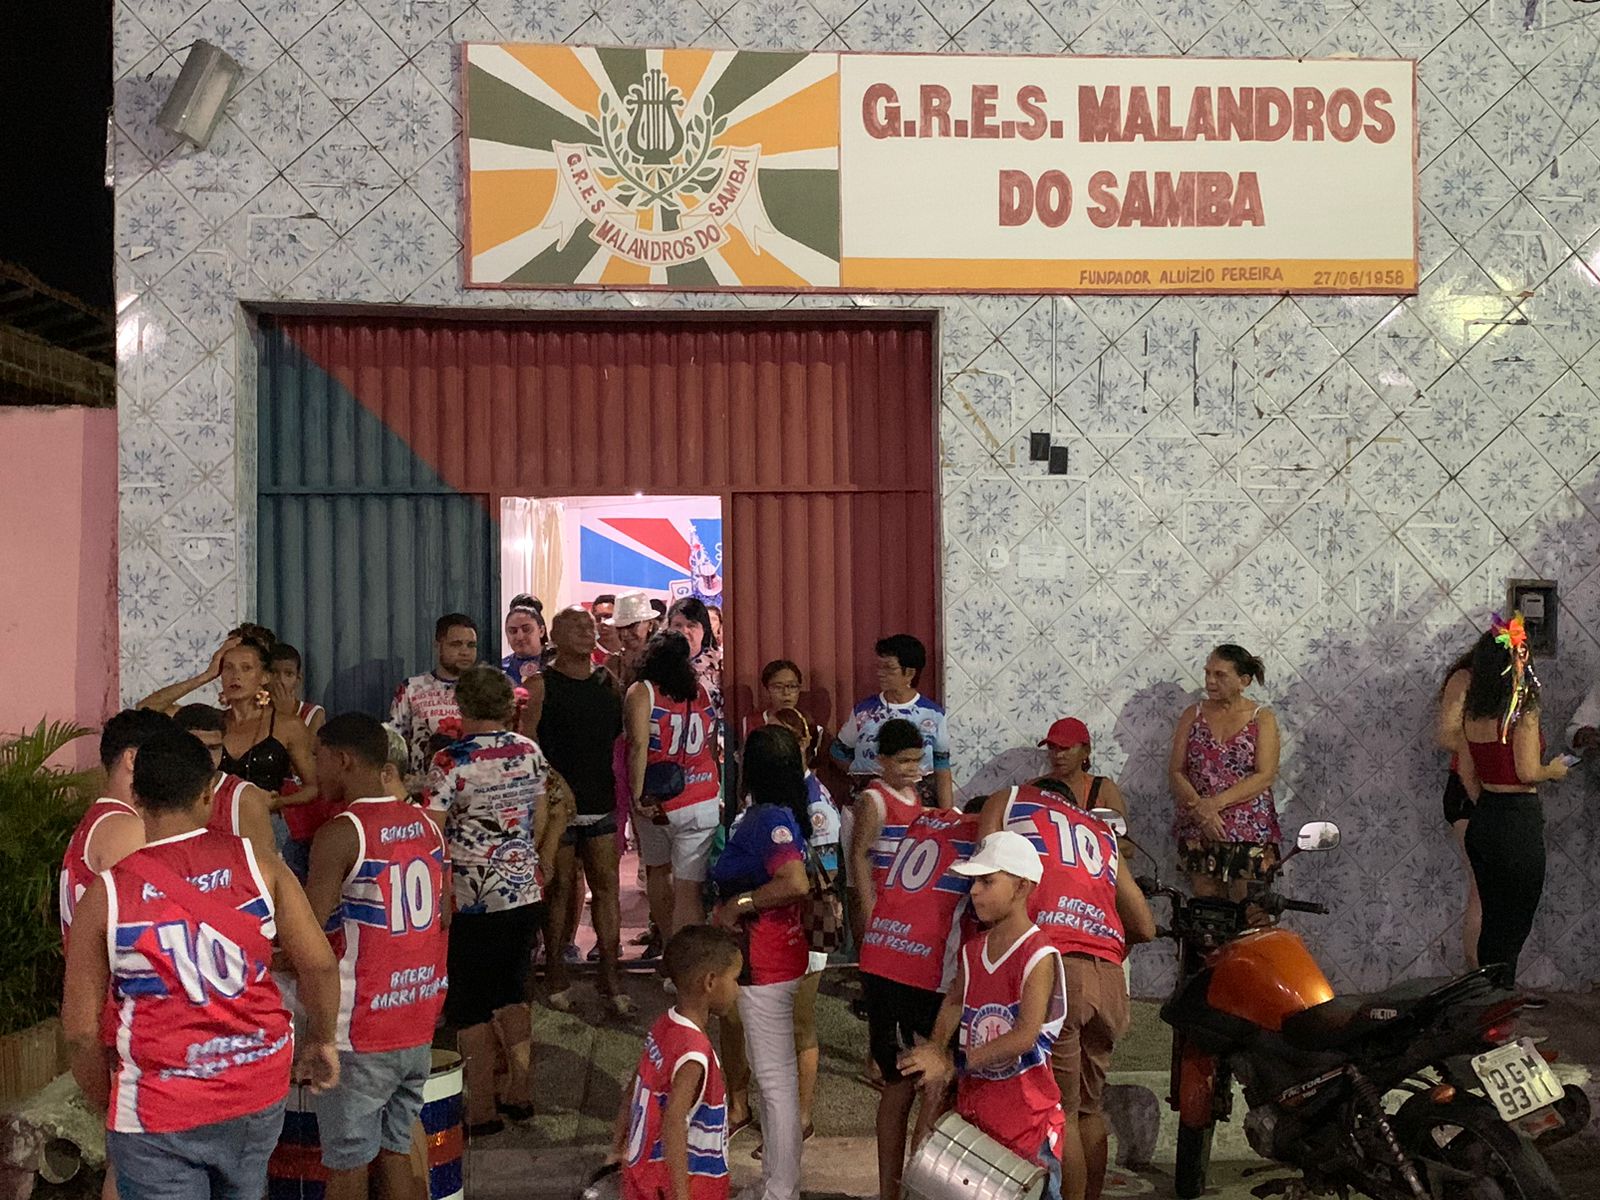 Pré-Carnaval da Malandros do Samba terá feijoada neste domingo em Natal (Foto: Divulgação)